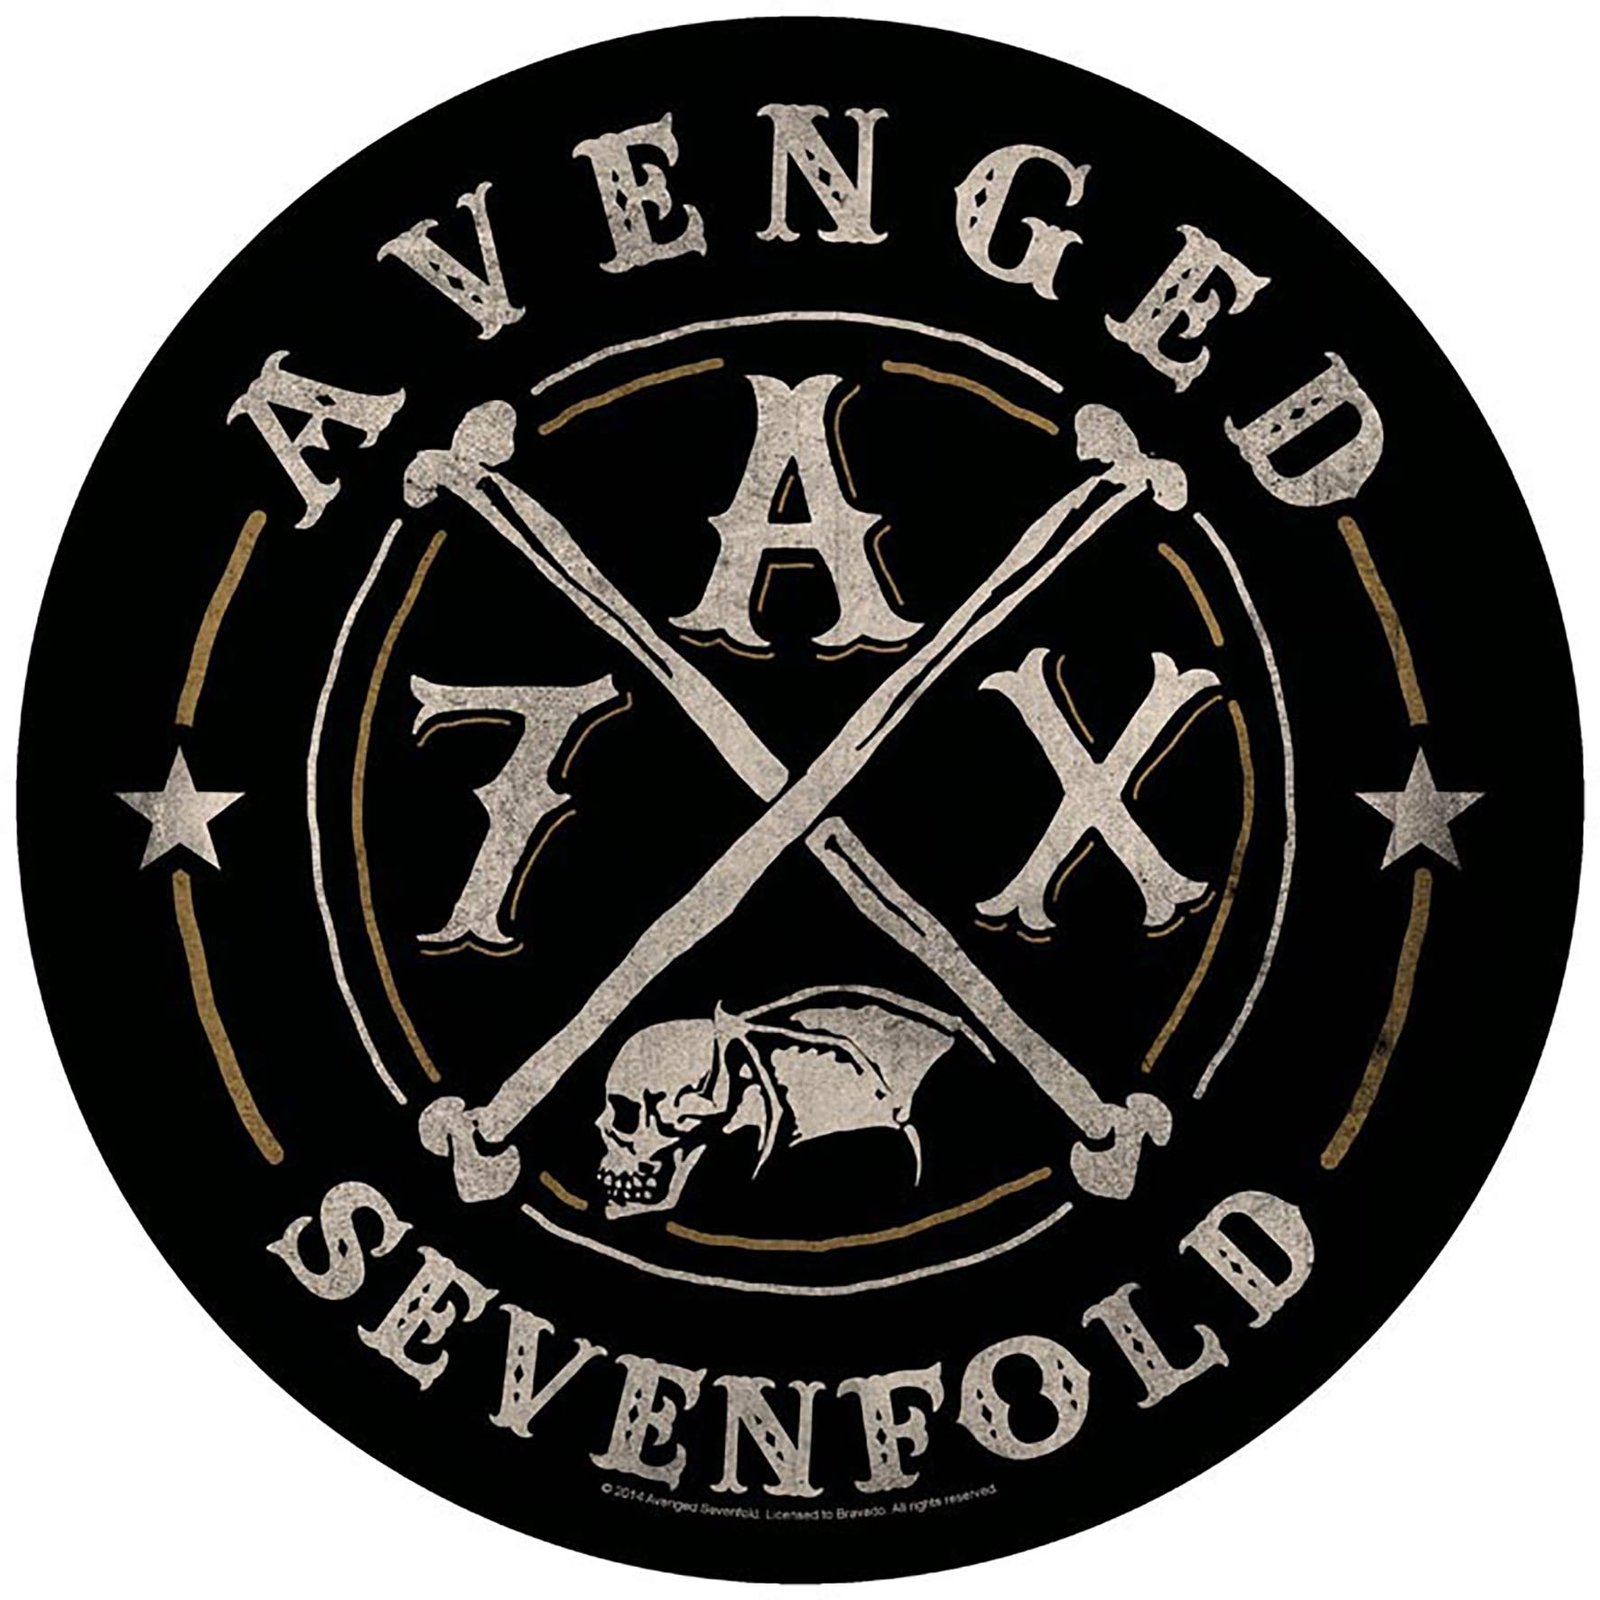 Afterlife [Subs. Eng/Esp] - Avenged Sevenfold [Alternate Version] Lyrics/ Letra